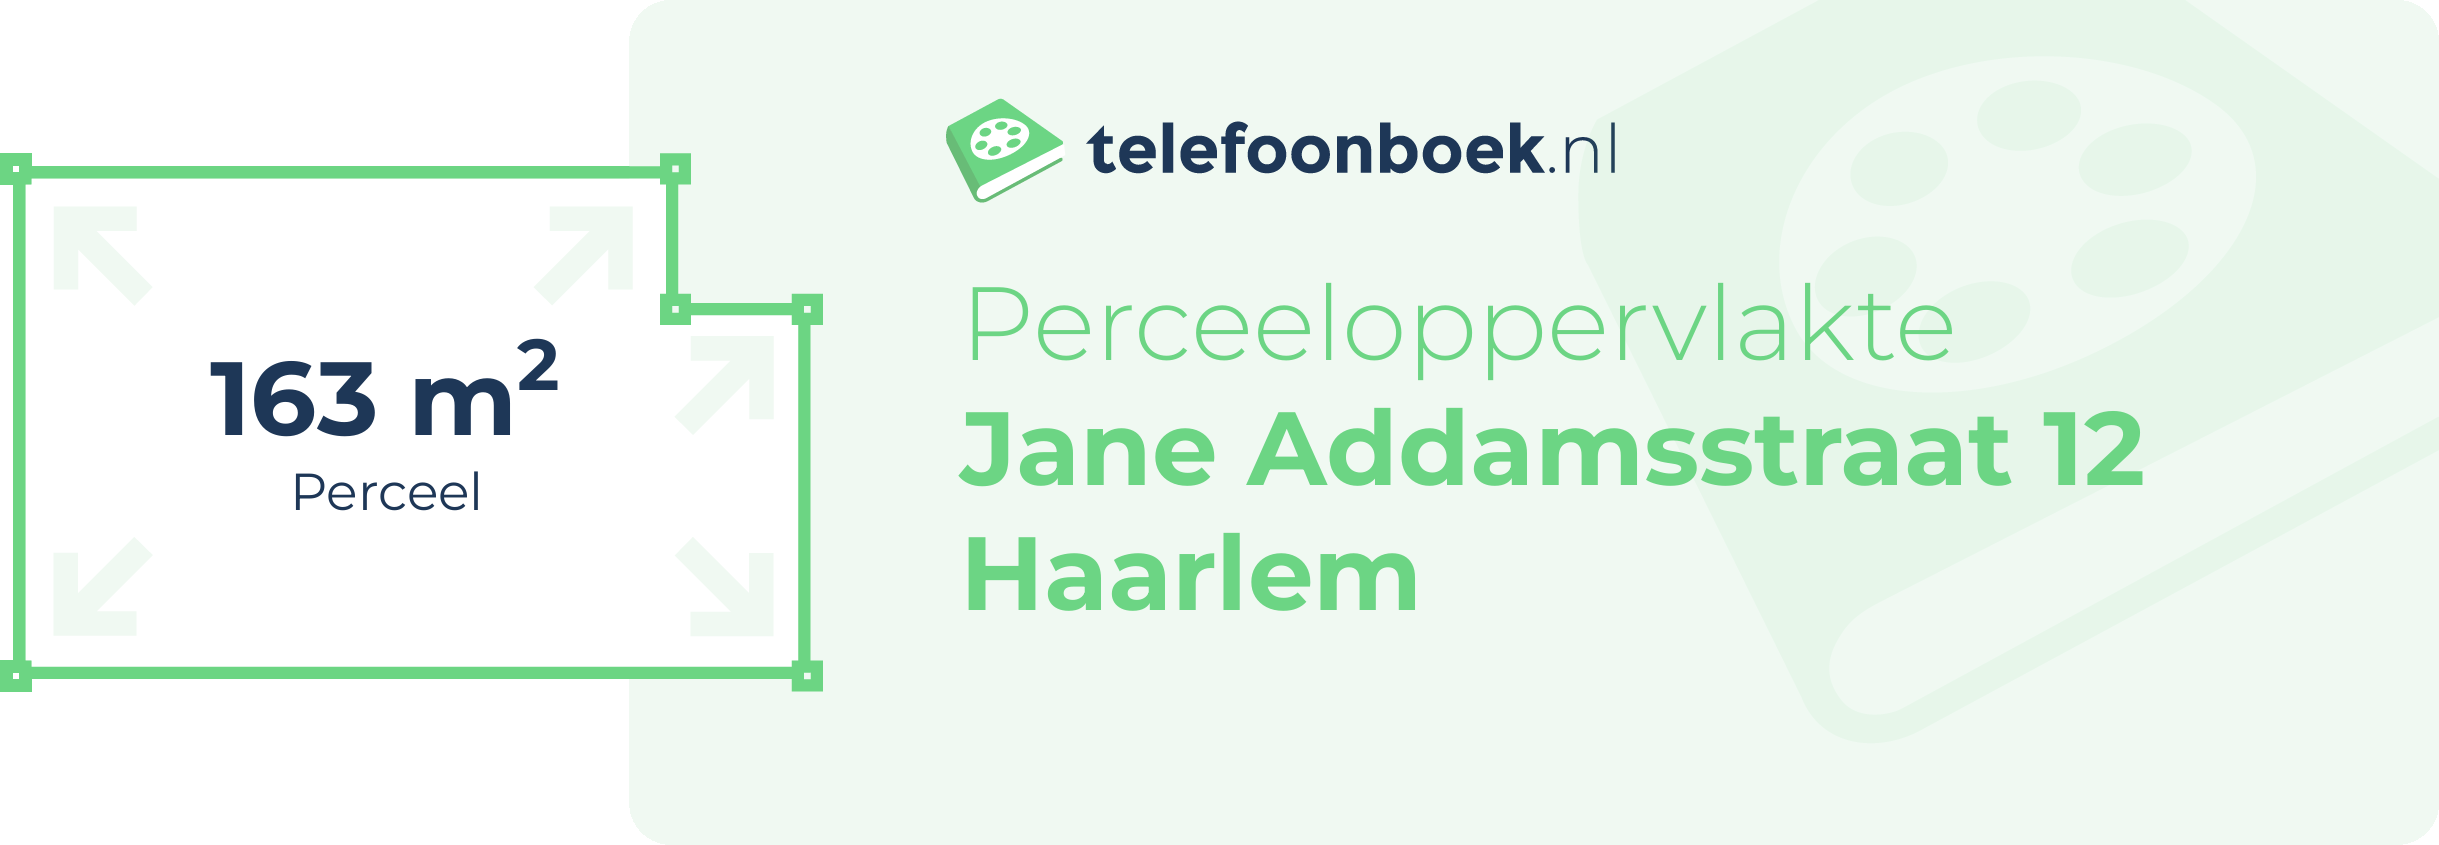 Perceeloppervlakte Jane Addamsstraat 12 Haarlem